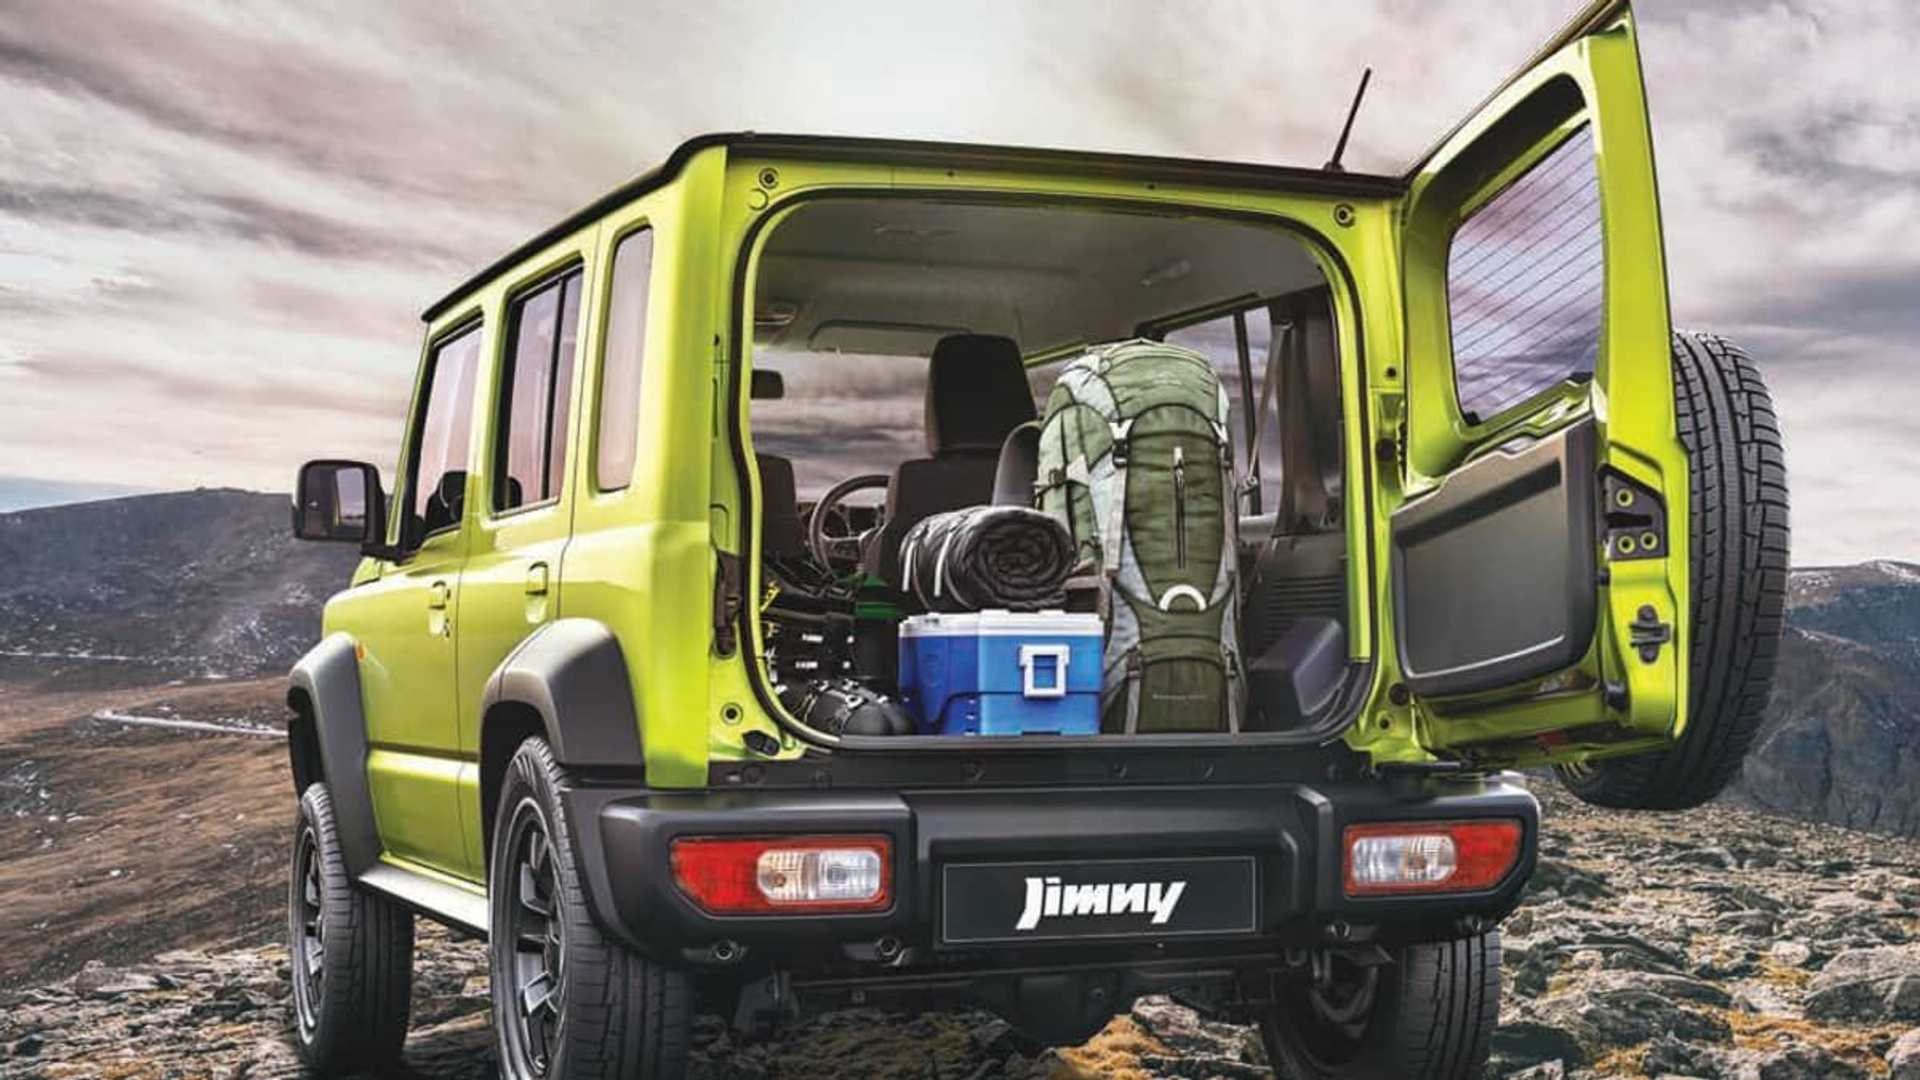 5 kapılı Suzuki Jimny tanıtıldı: İşte tasarımı ve özellikleri